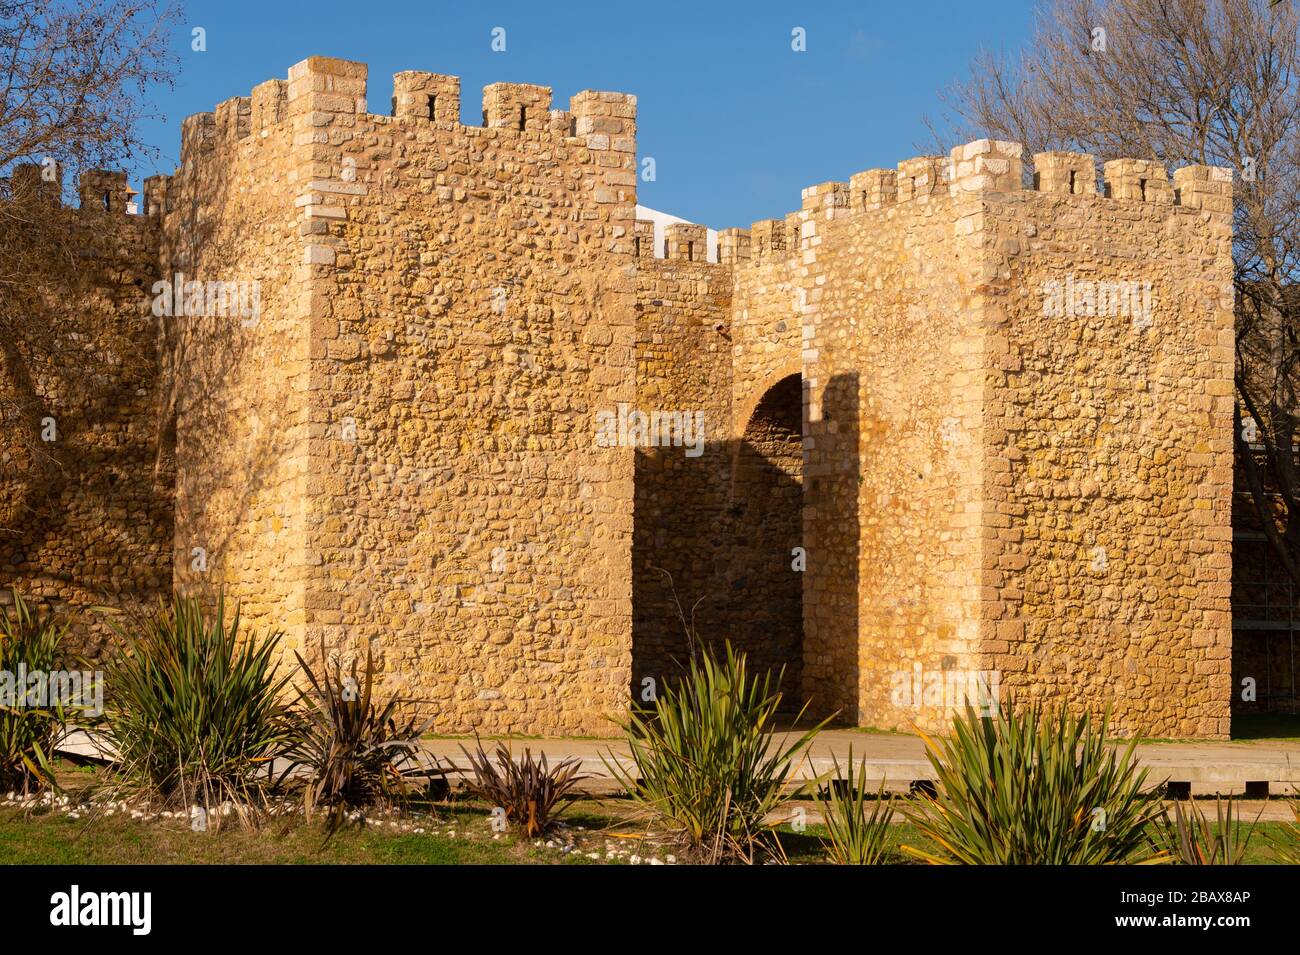 Governor's Castle (Castelo dos Governadores) in Lagos, Portugal Stock Photo